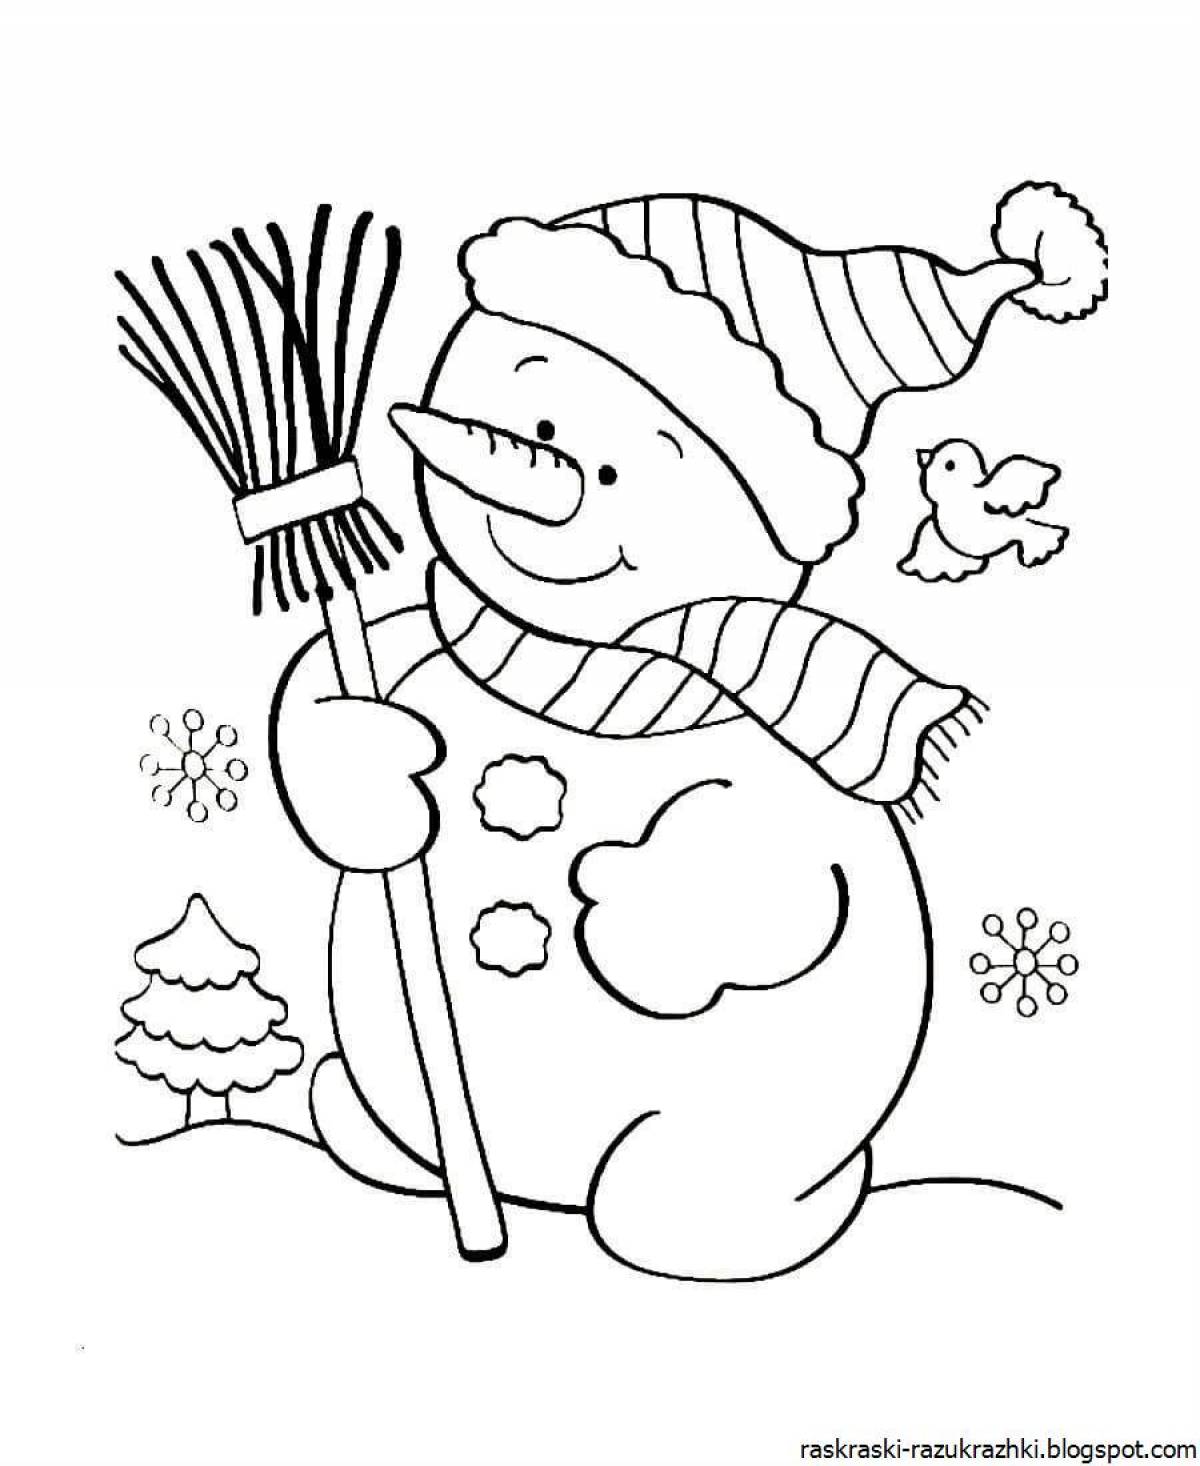 Раскраска улыбающийся снеговик для детей